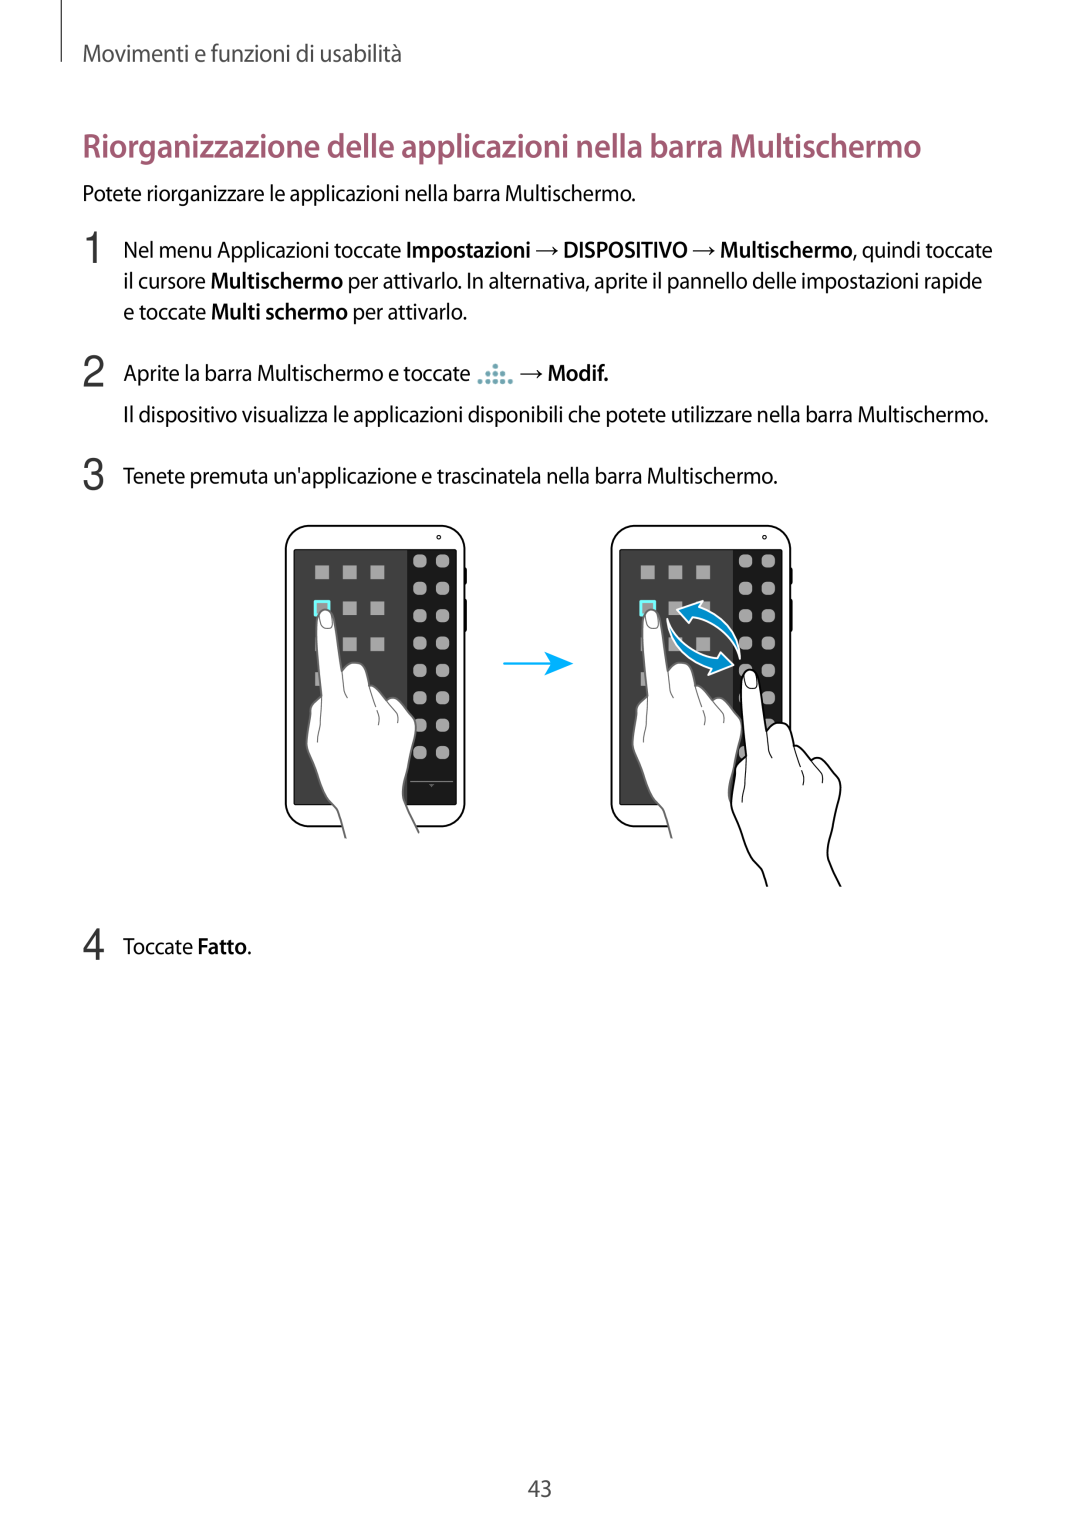 Samsung SM-T700NTSAITV Riorganizzazione delle applicazioni nella barra Multischermo, Movimenti e funzioni di usabilità 